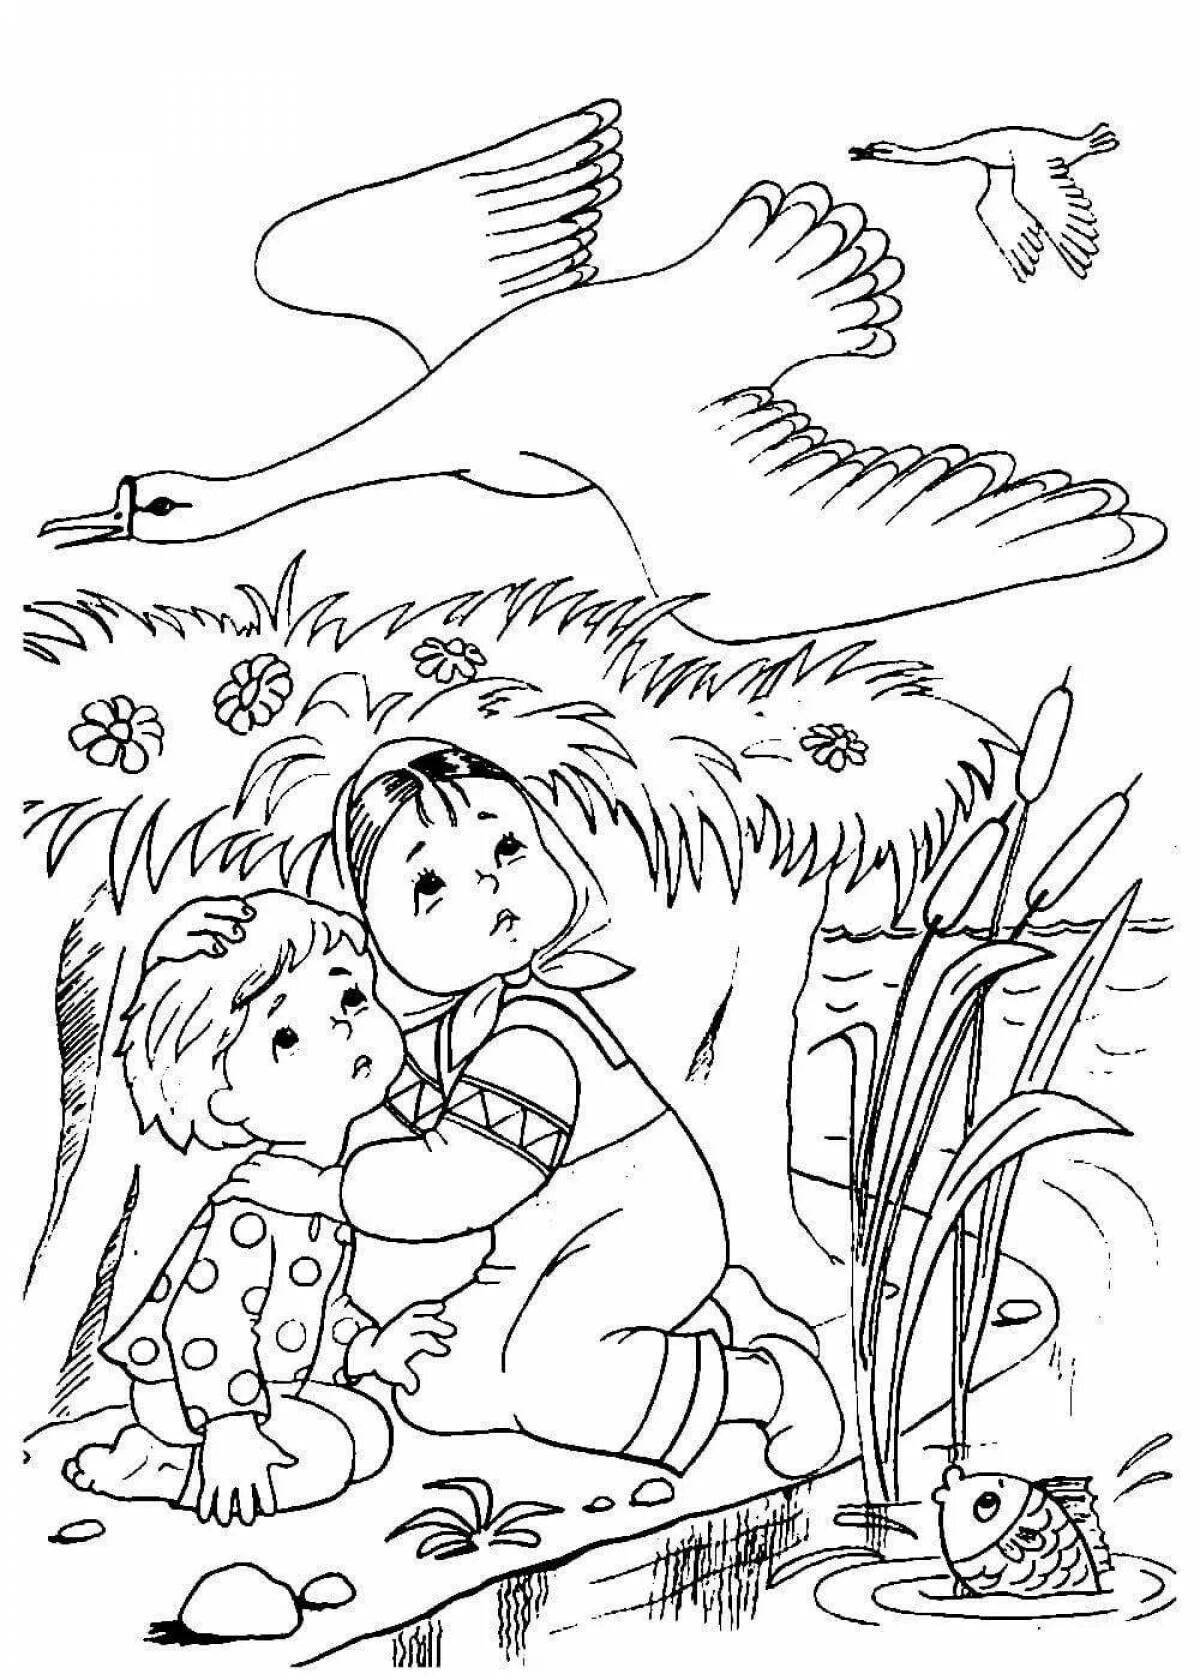 Гуси лебеди рисунок для детей 1 класса. Сказка-раскраска. Гуси-лебеди. Раскраски к сказке гуси лебеди для детей. Раскраска по сказке гуси лебеди для детей. Гуси лебеди Иванушка раскраска.